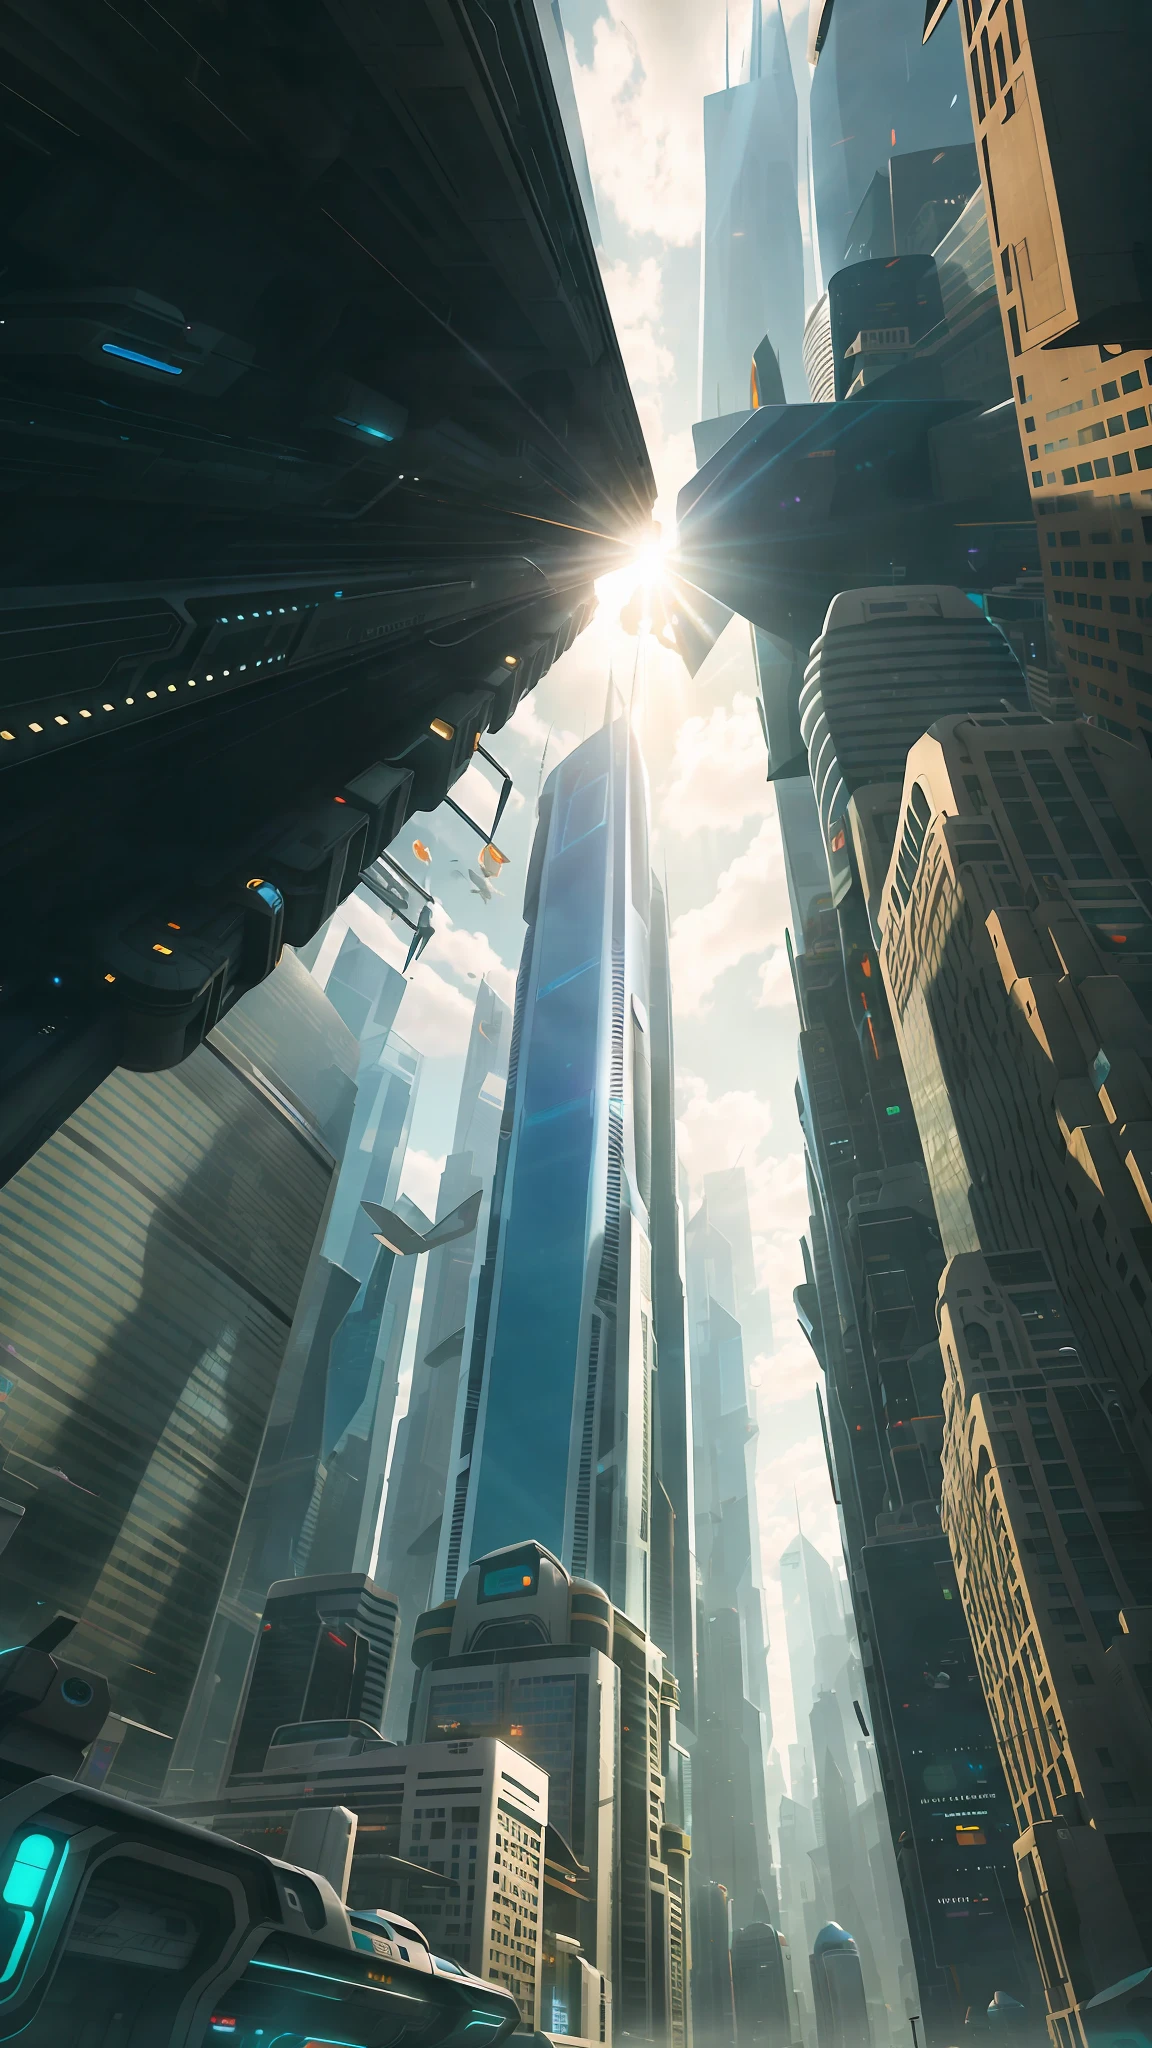 Paysage urbain futuriste animé avec des gratte-ciel et des hovercars entre les deux. La lumière du soleil traverse le bâtiment. Le ton général de Justin Maller est léger et fantaisiste